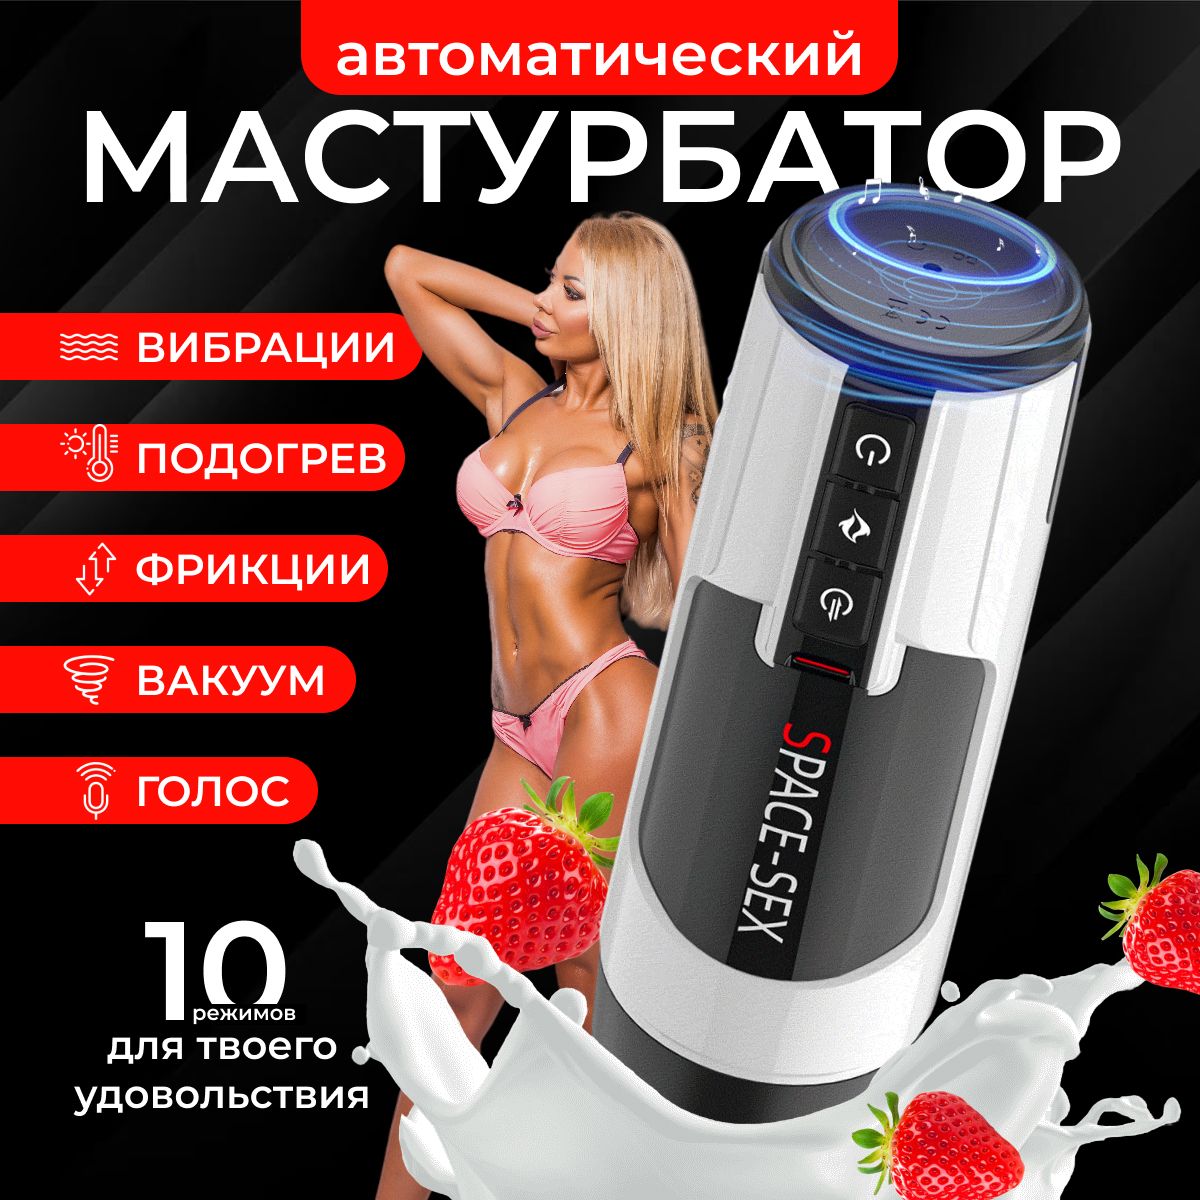 Мастурбатормужской,автоматическийс10режимамителескопическихдвижений,вакуумный,подогрев,18+,AbubekirZE.